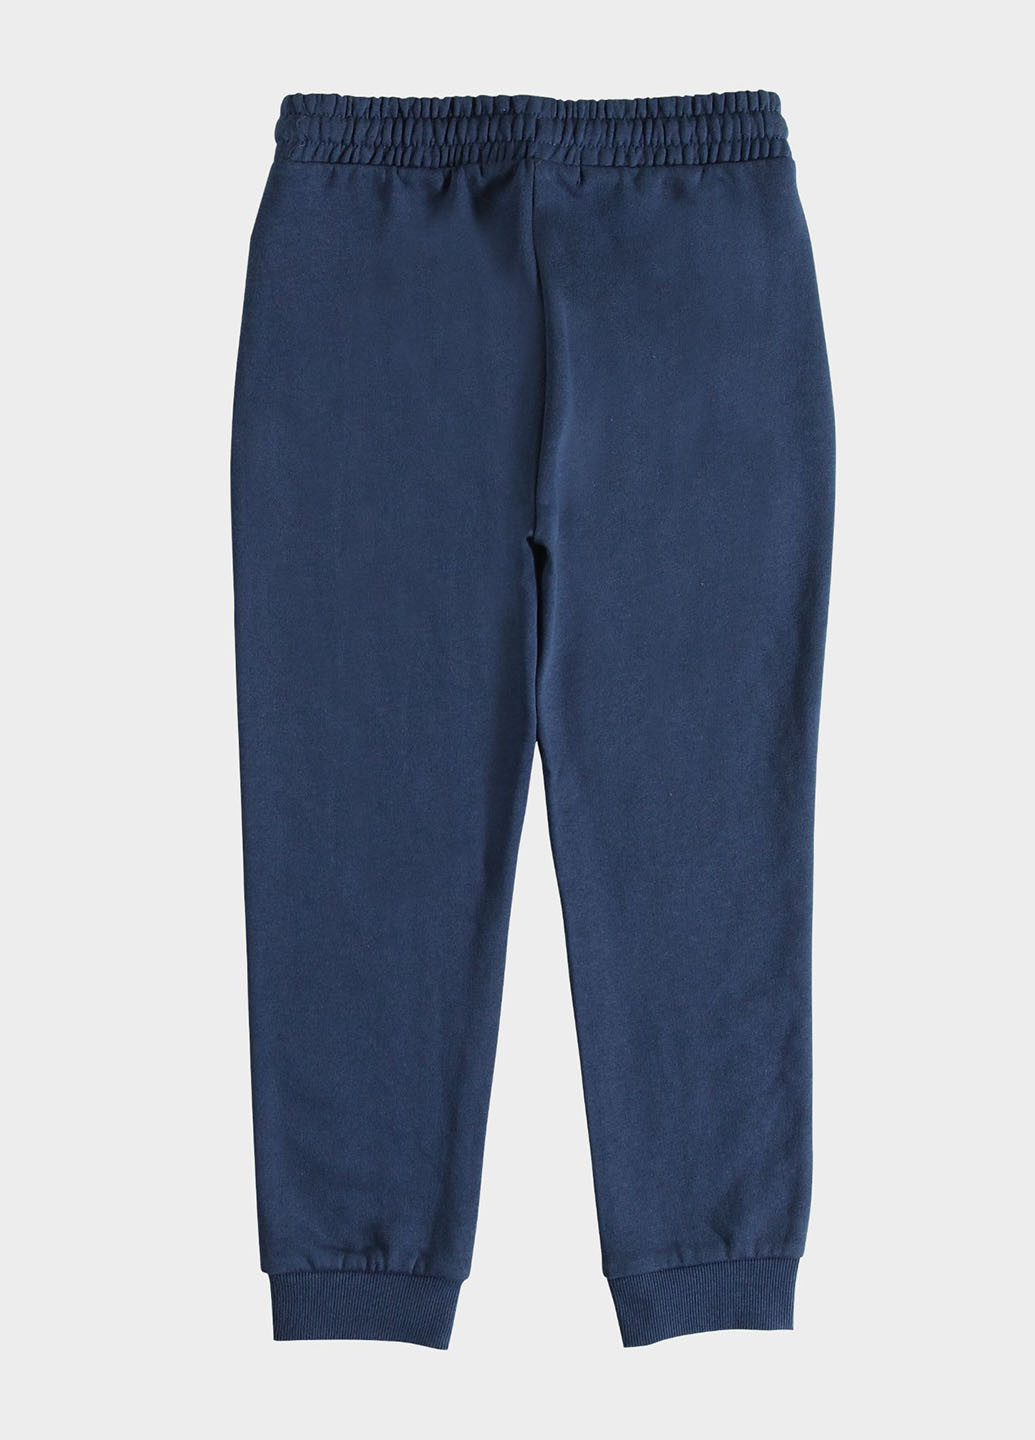 Темно-синие спортивные демисезонные брюки джоггеры Piazza Italia